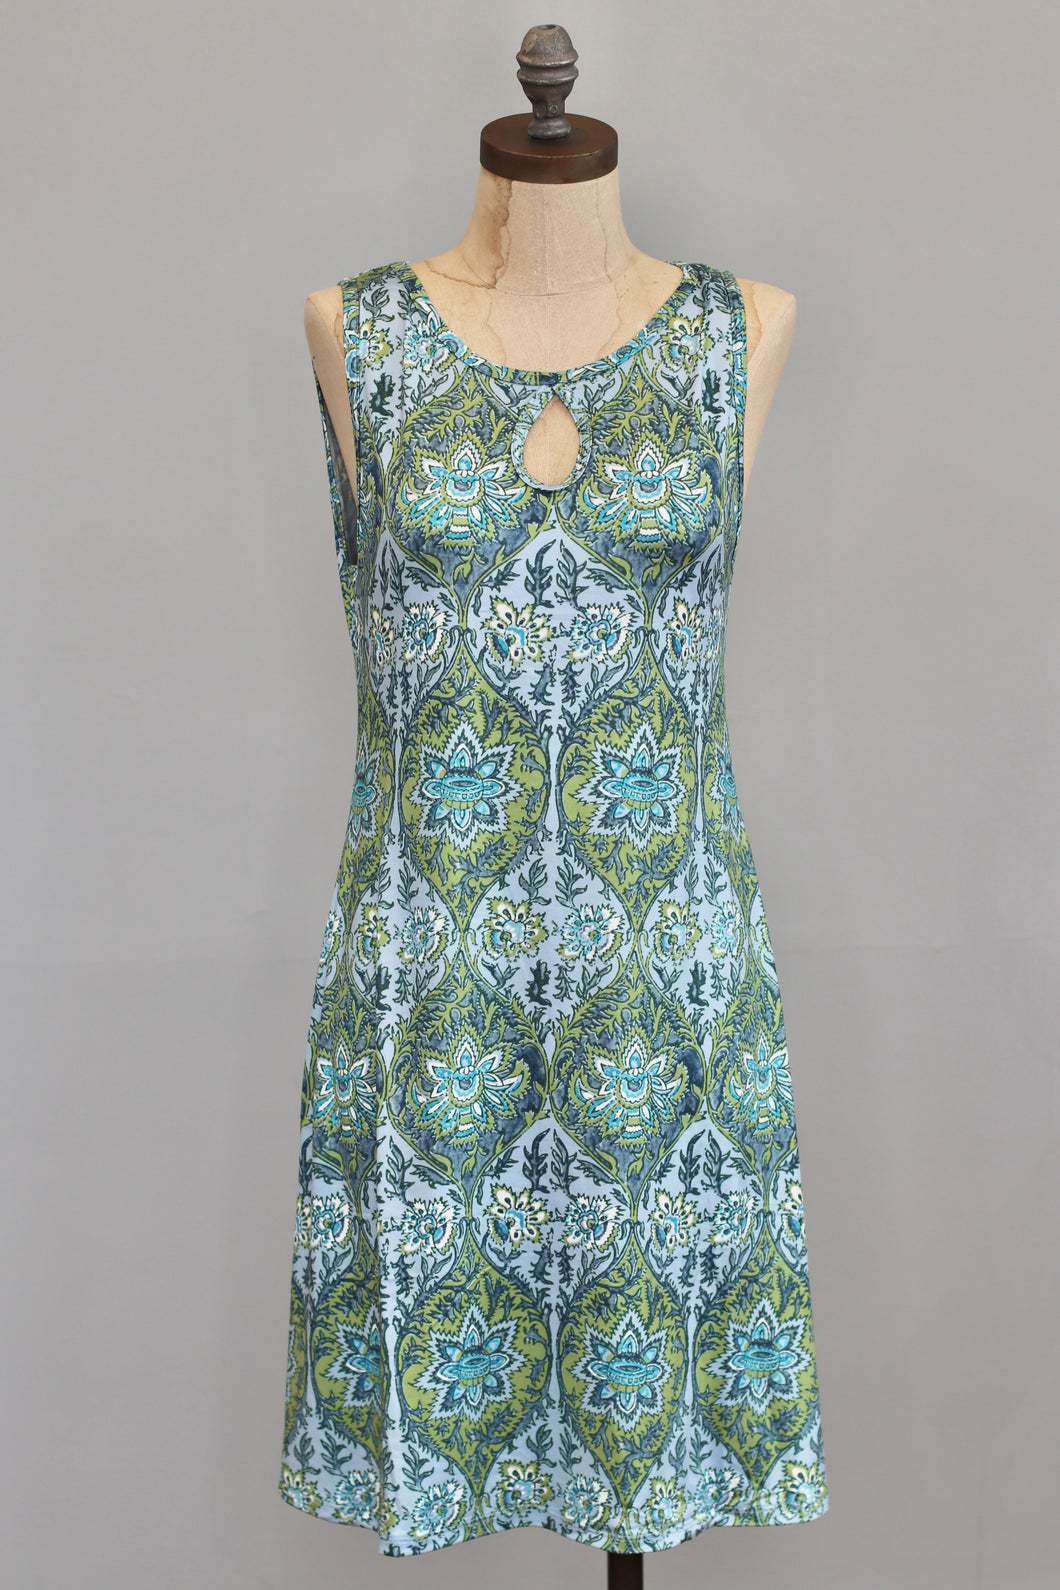 Sedona Keyhole Dress (Reversible Neckline) - Florence